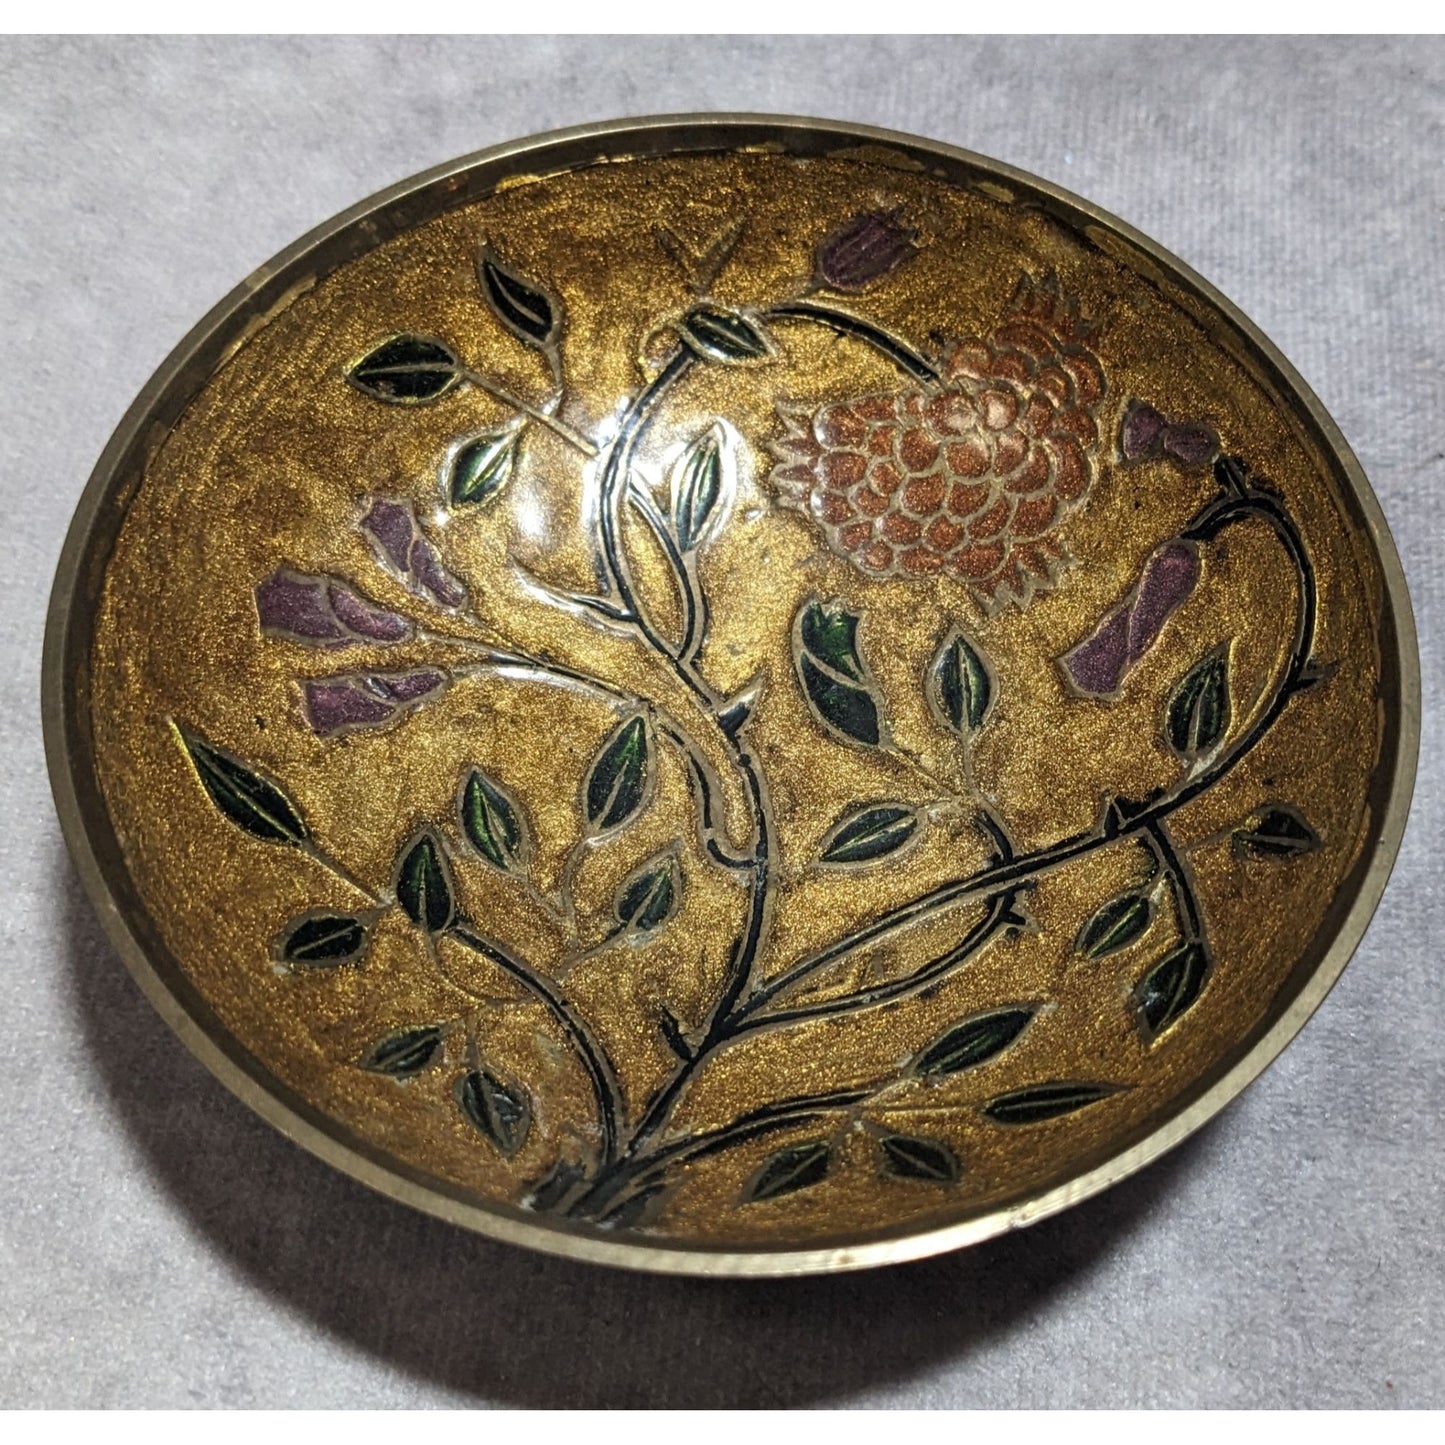 Vintage Brass Floral Bowl